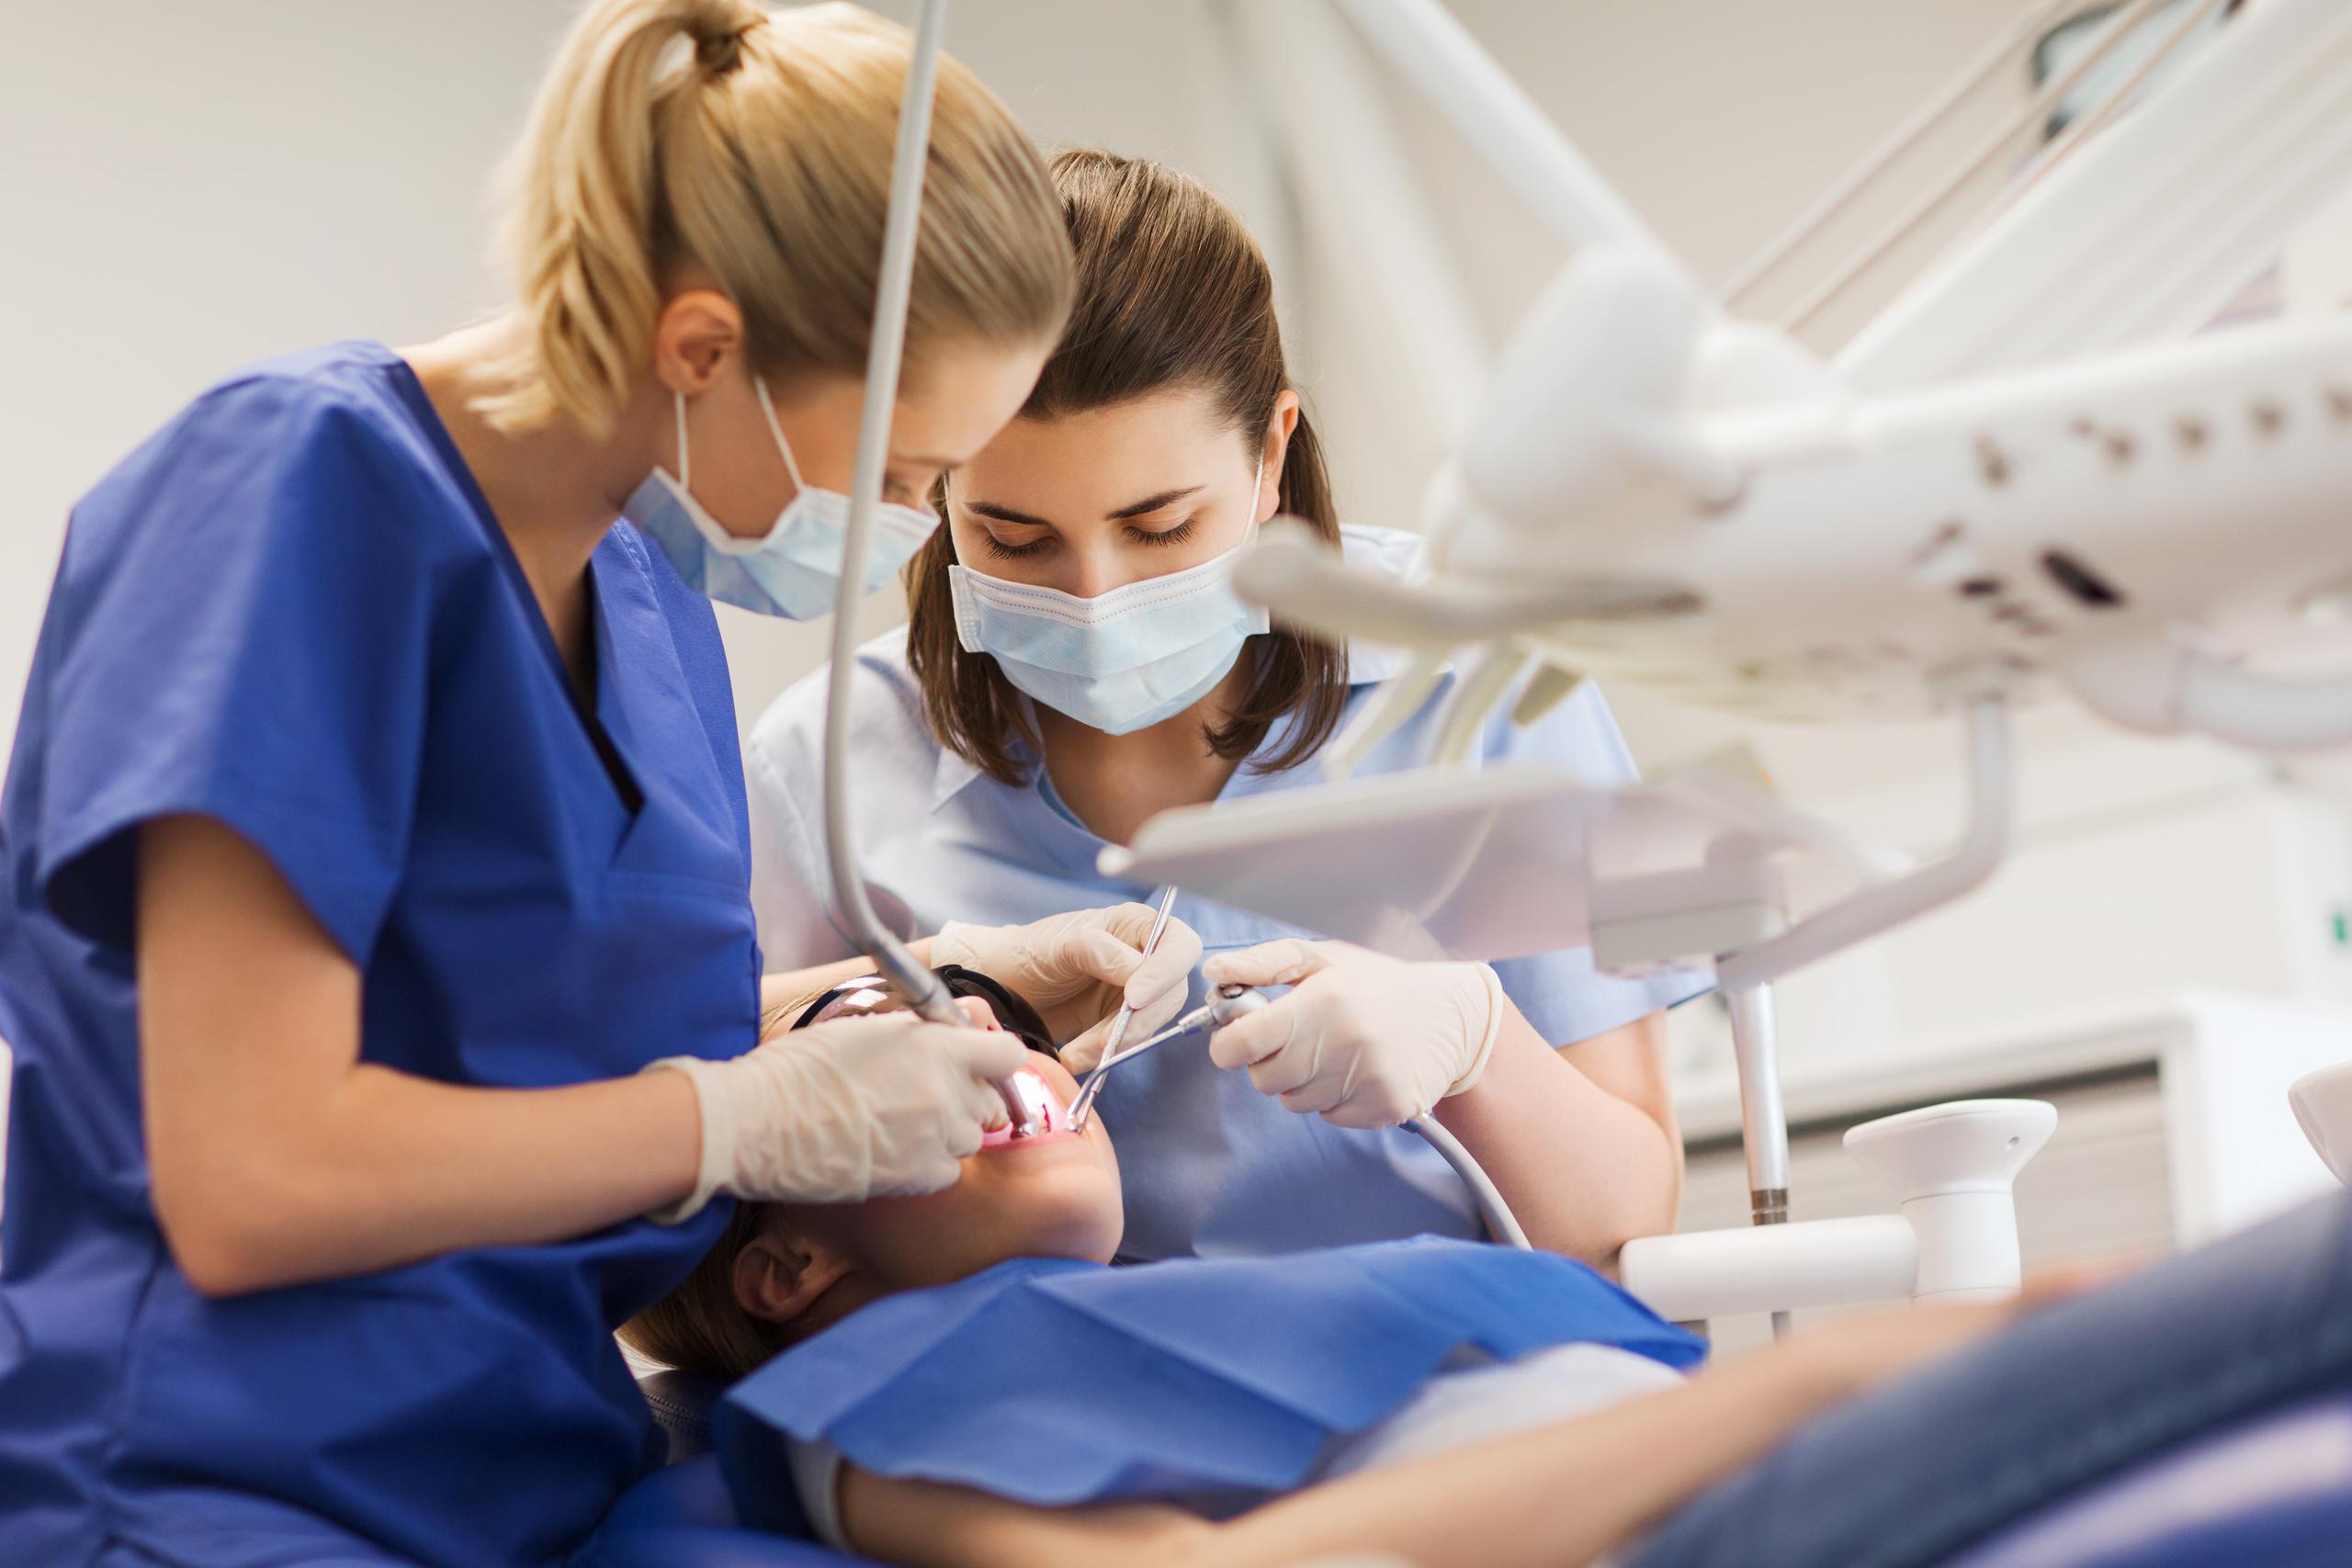 Las carreras técnicas, como la de asistente dental, te ayudarán a convertirte en un profesional competente y bien preparado en esas disciplinas.